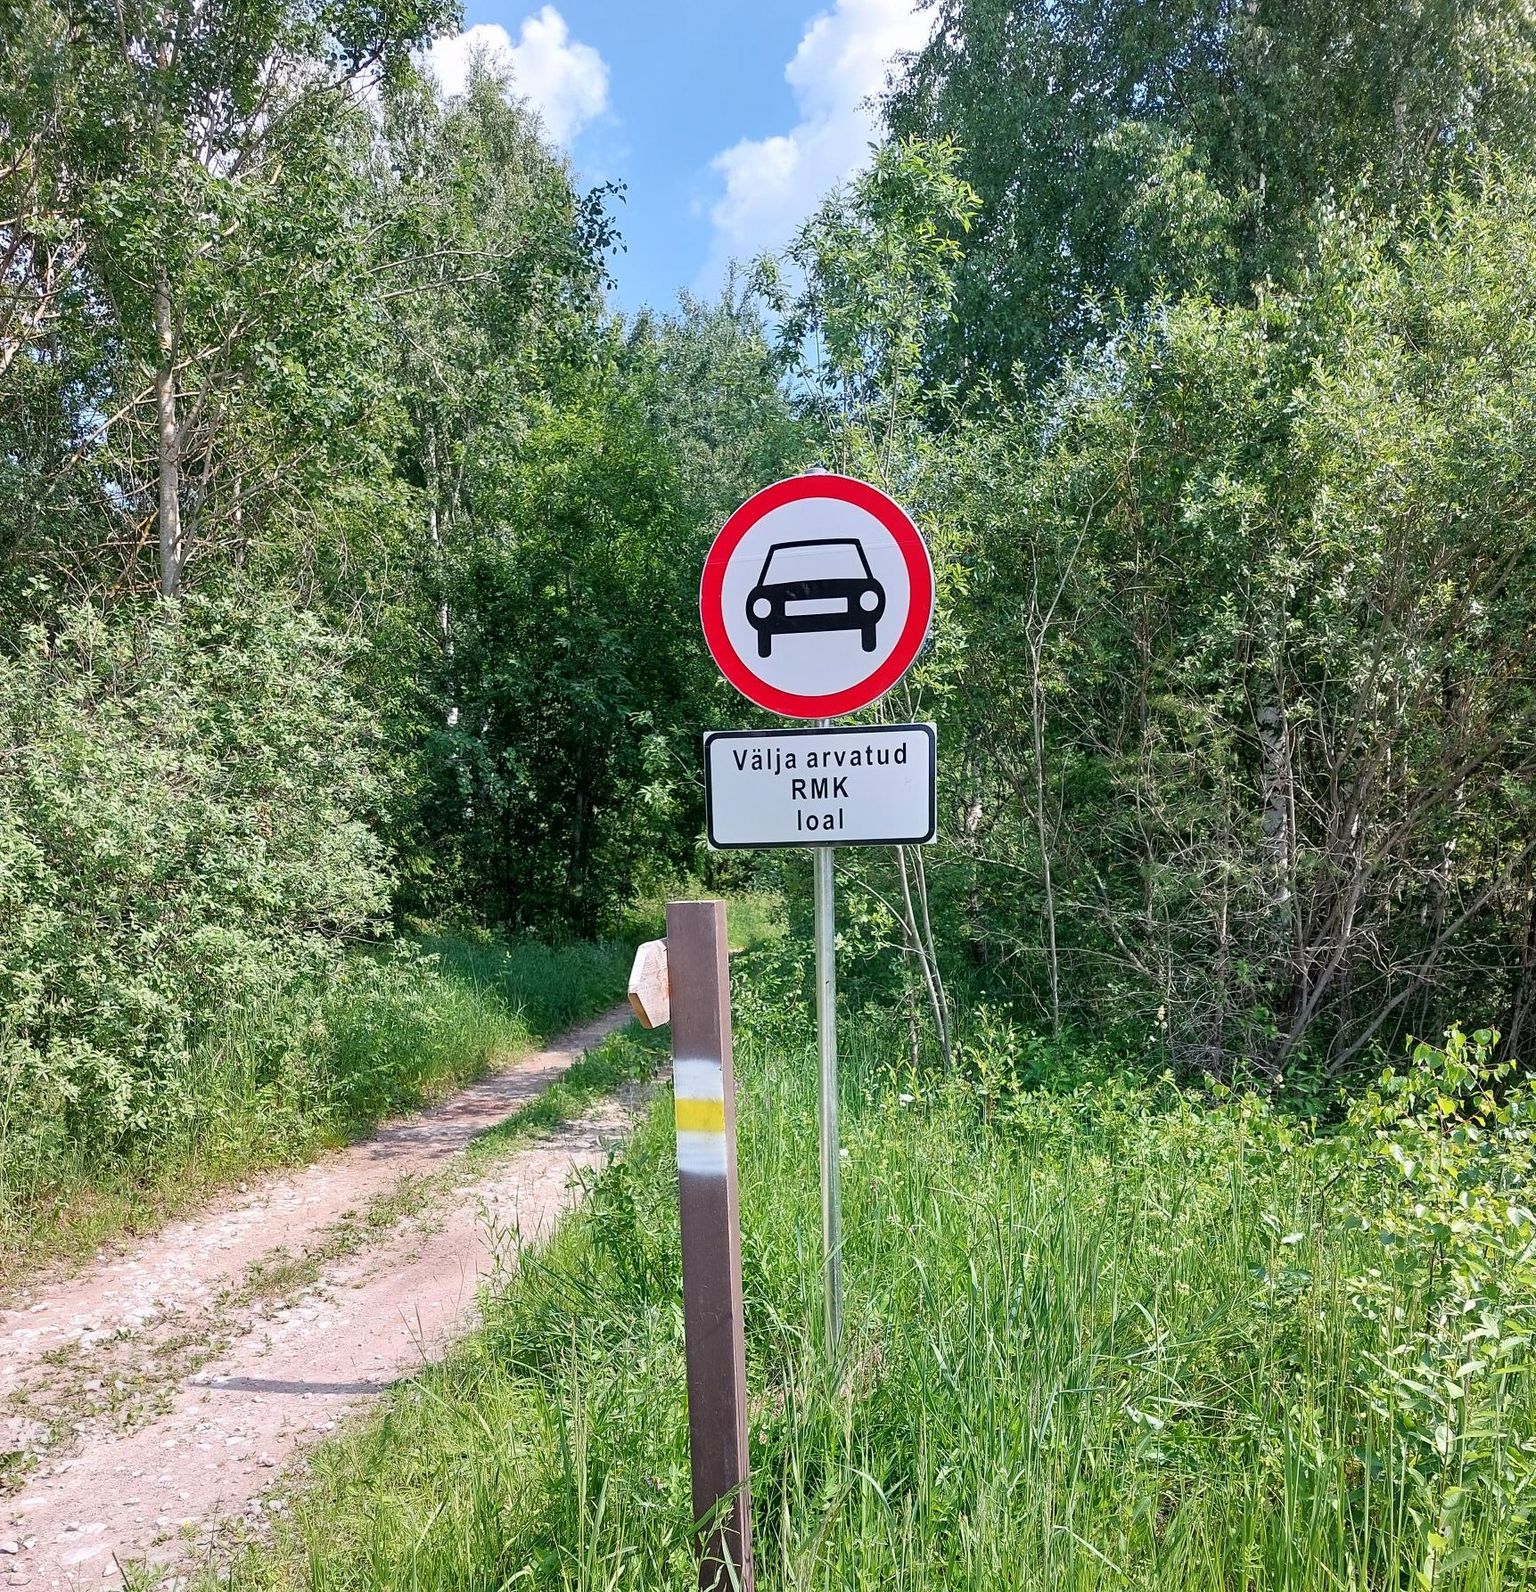 Oru turbarappa viivatel teedele paigaldati mootorsõidukite liiklemise keelavad märgid.